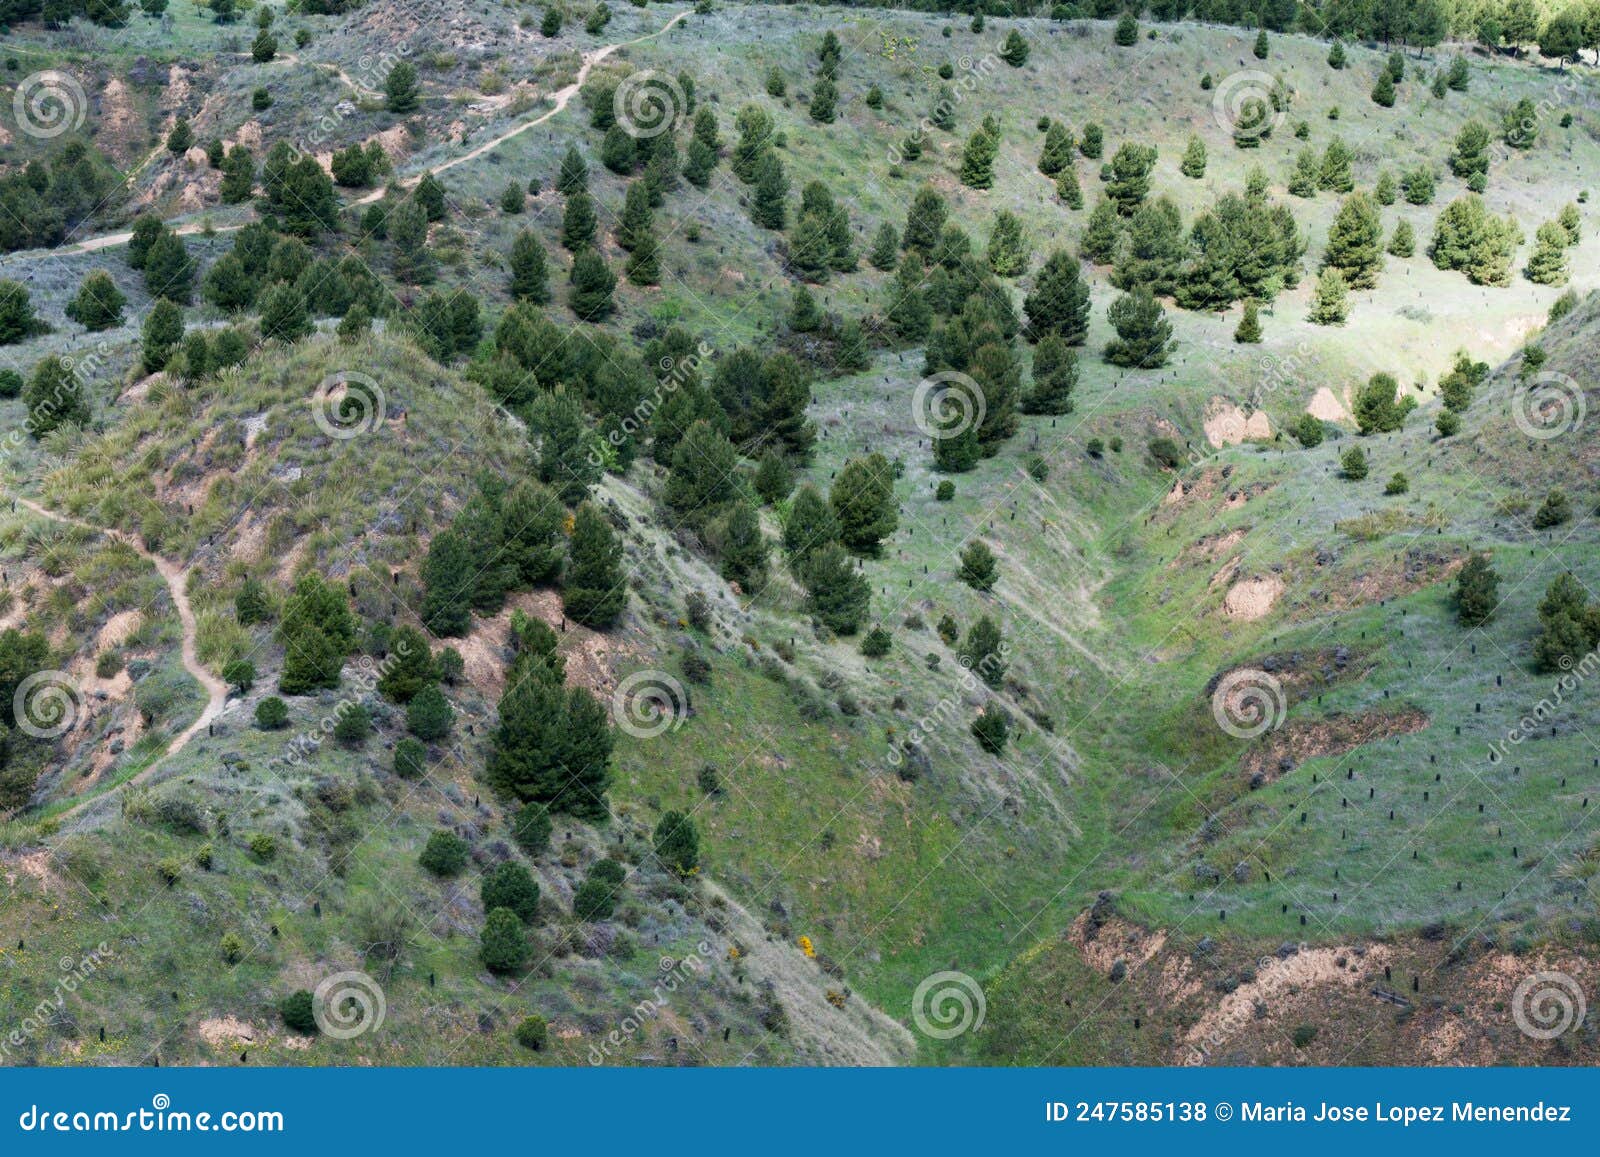 los cerros park in springtime. aerial view. alcala de henares, madrid